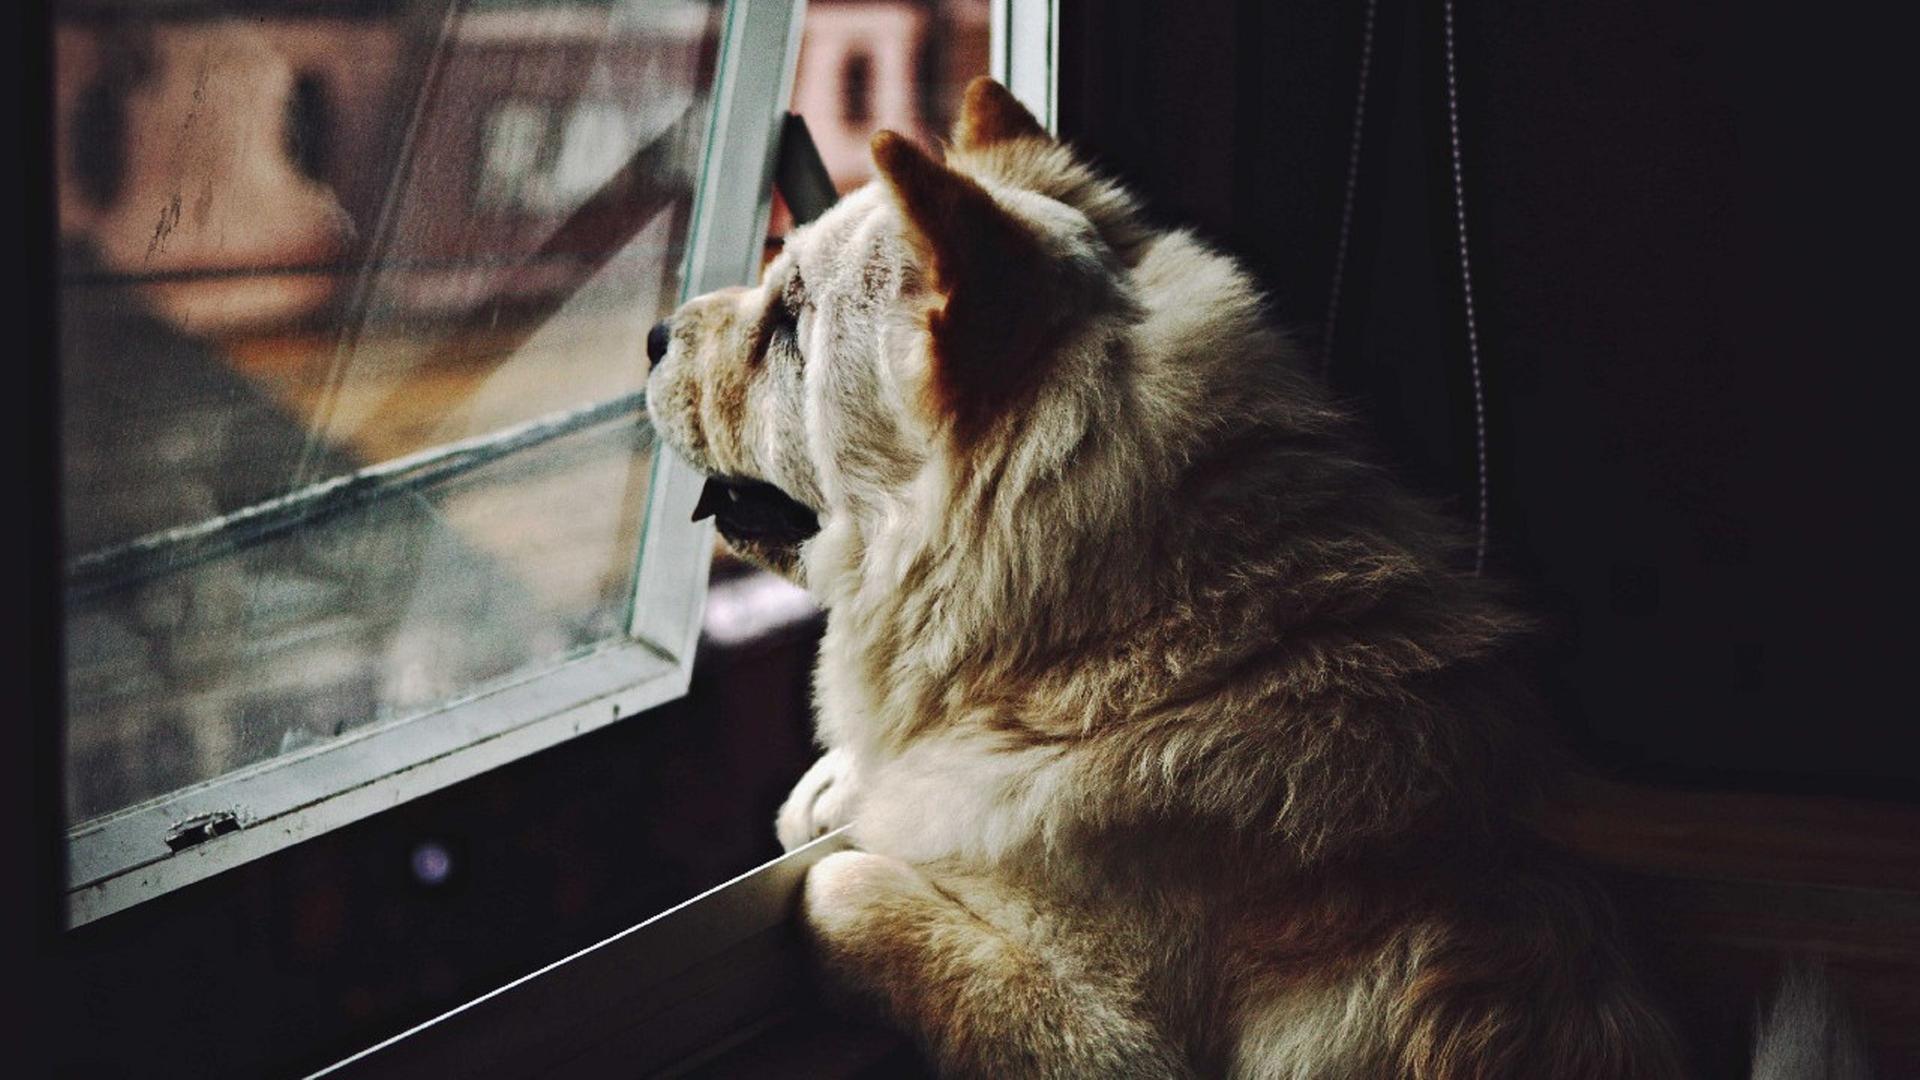 Ein Hund sitzt in einer Wohnung und guckt aus dem Fenster.